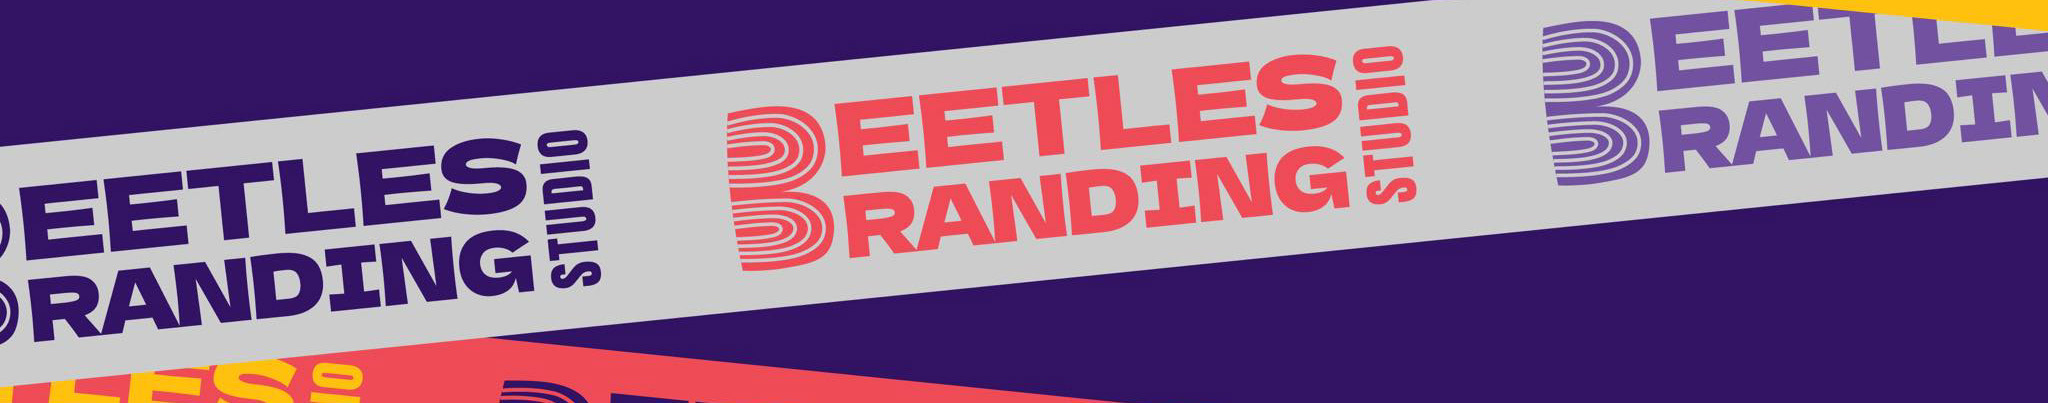 Banner de perfil de Beetles Branding Studio